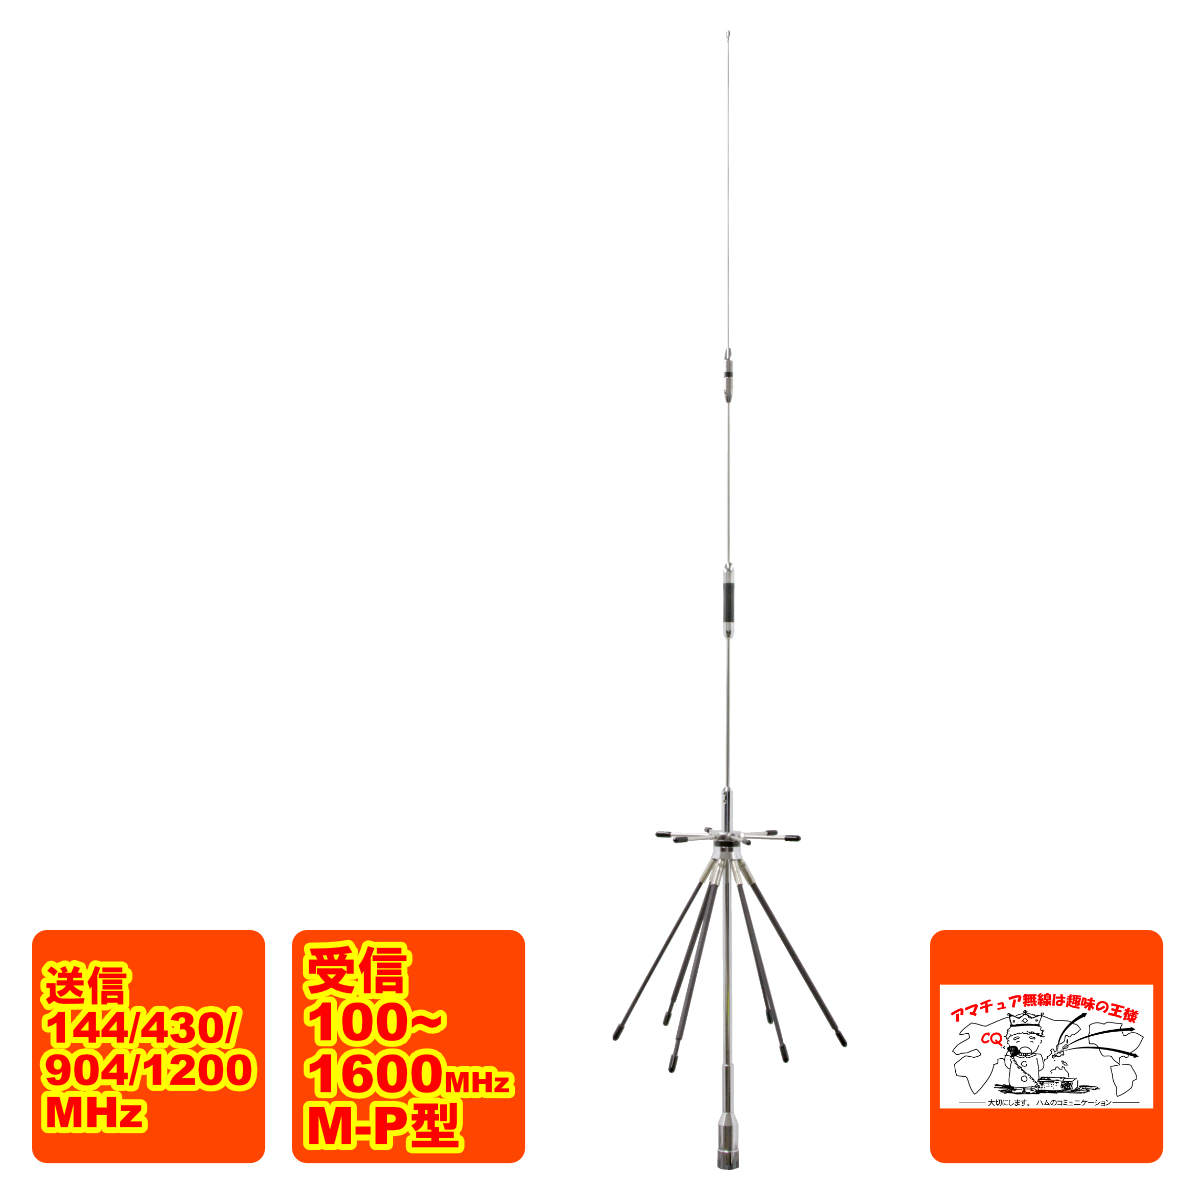 DA1600 радиолюбительская связь Mobil для маленький размер disco -n антенна ( простой упаковка товар )M-P type прием 100~1600MHz передача 144/430/904/1200MHz